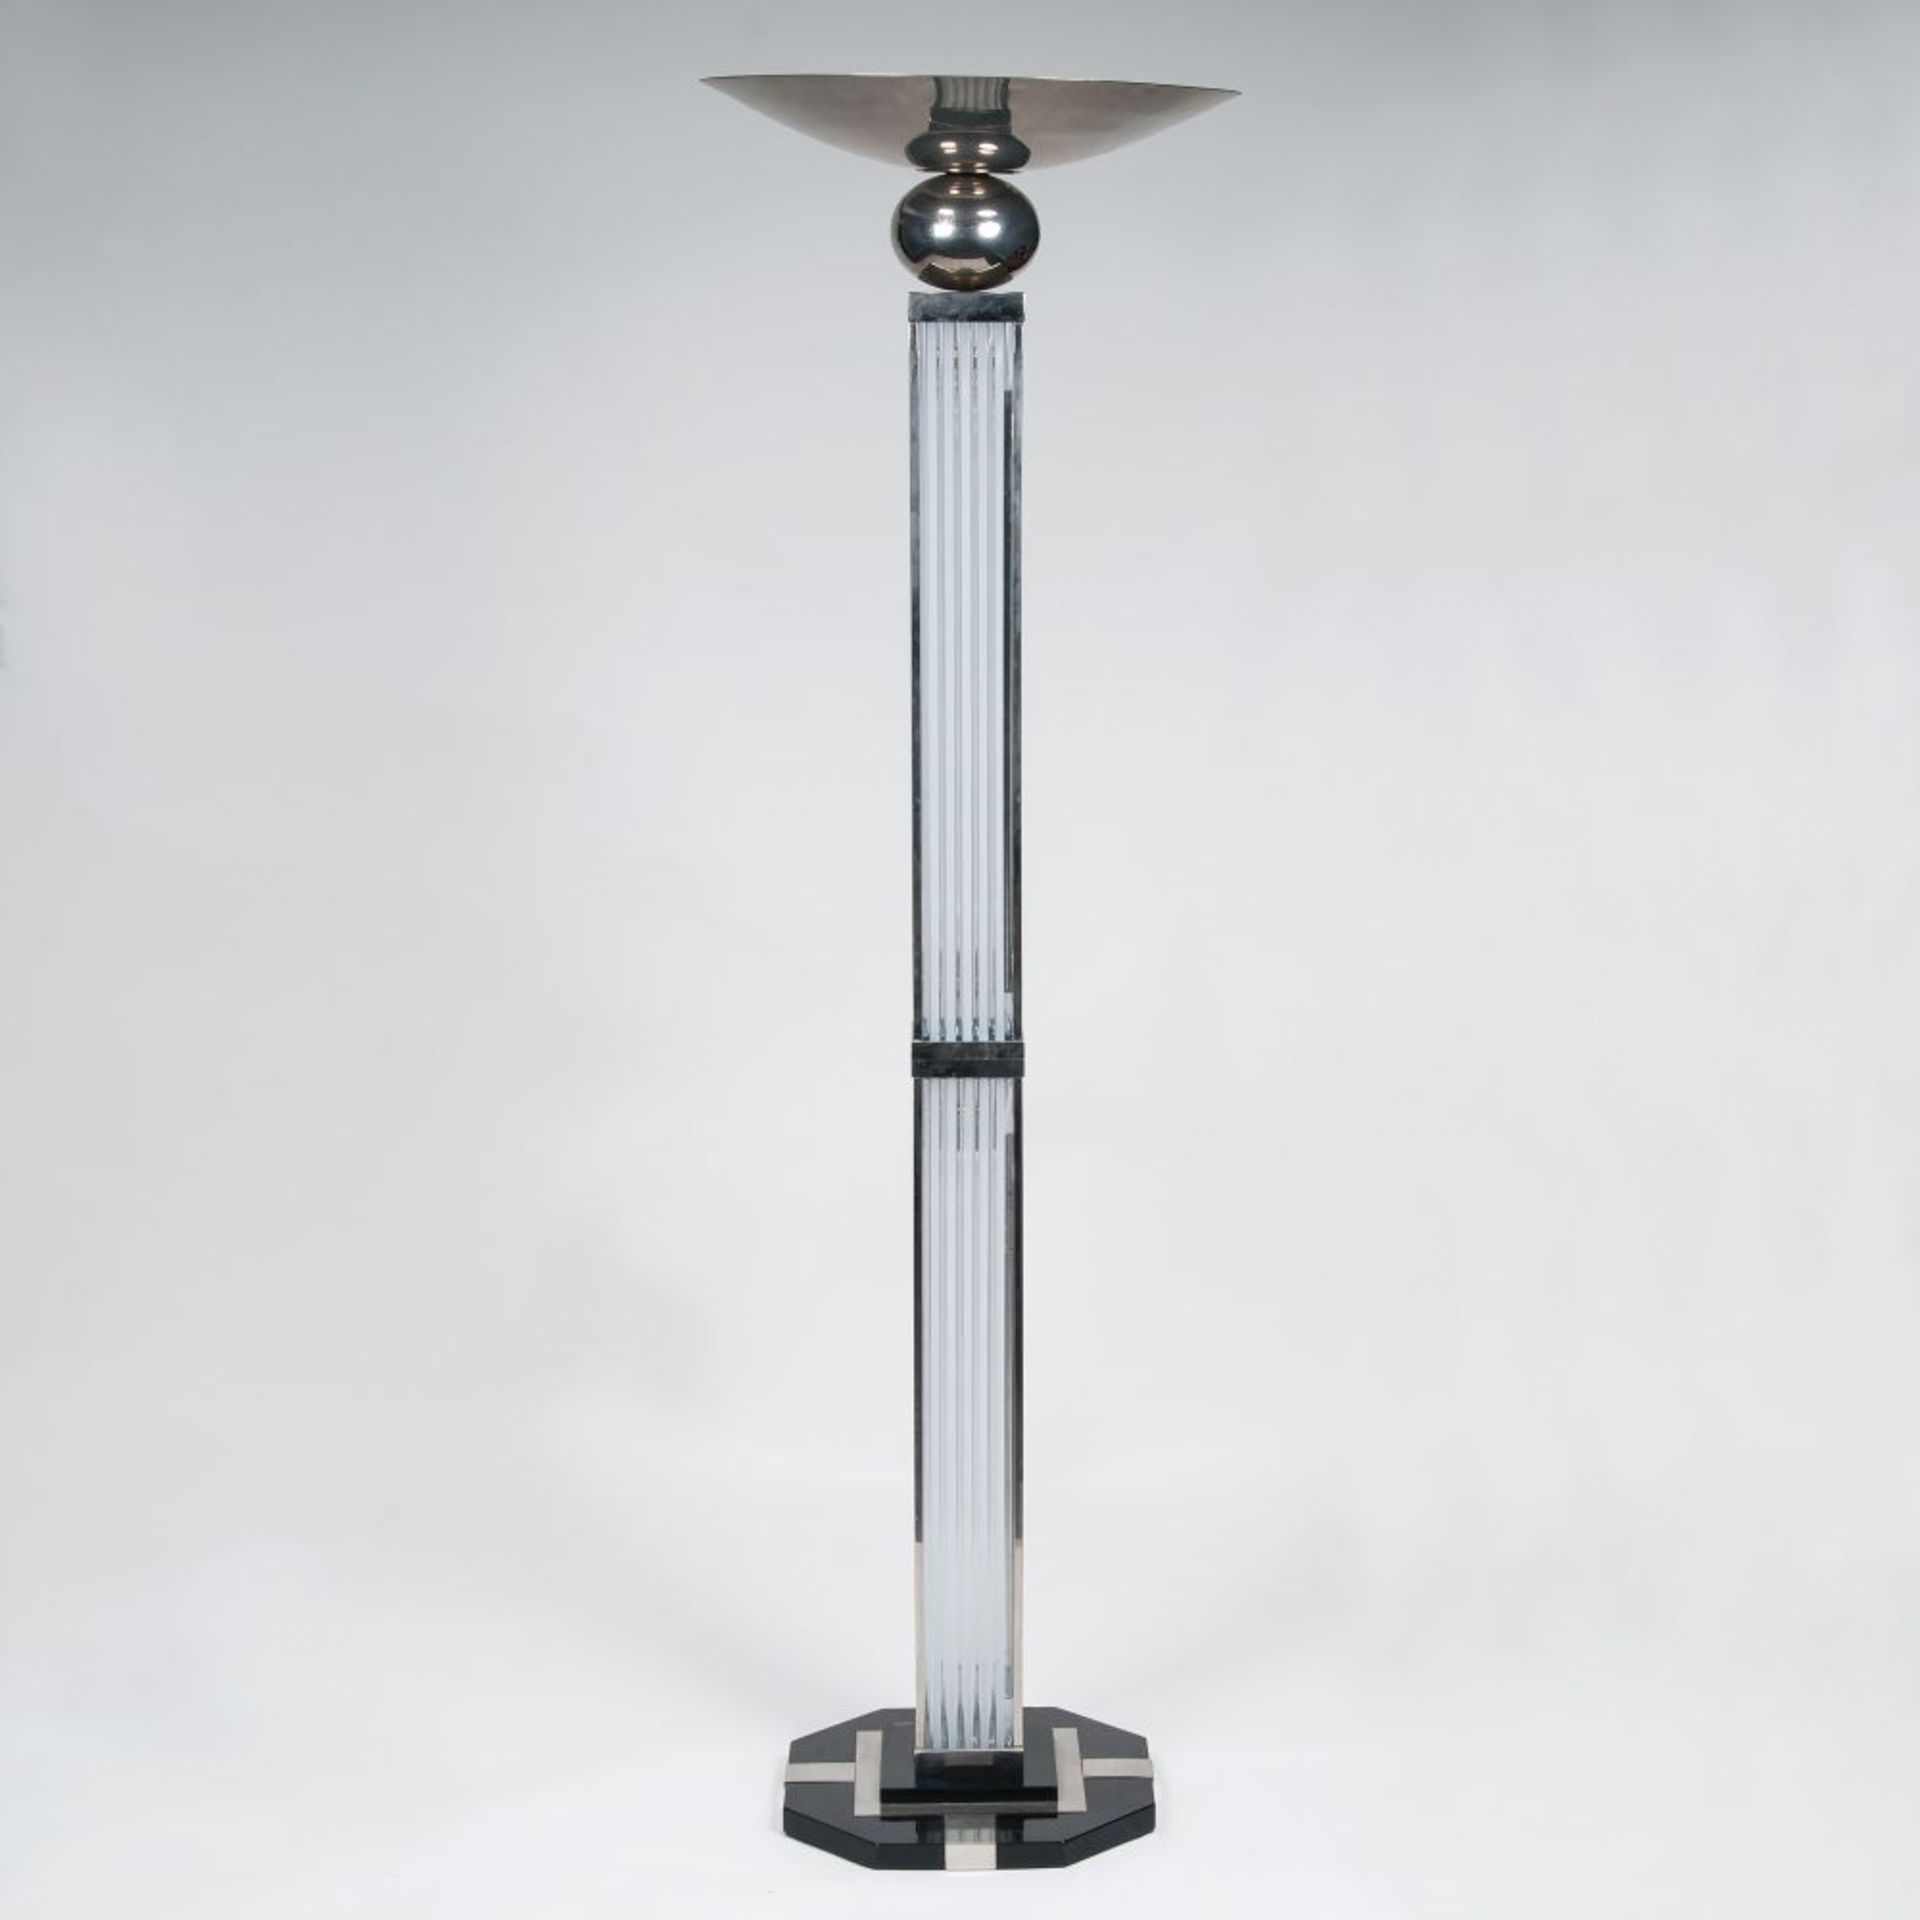 Stehlampe im Art-déco Stil. Messing, vernickelt, Glas. Oktogonaler Fuß in Hochglanz-Schwarzlack